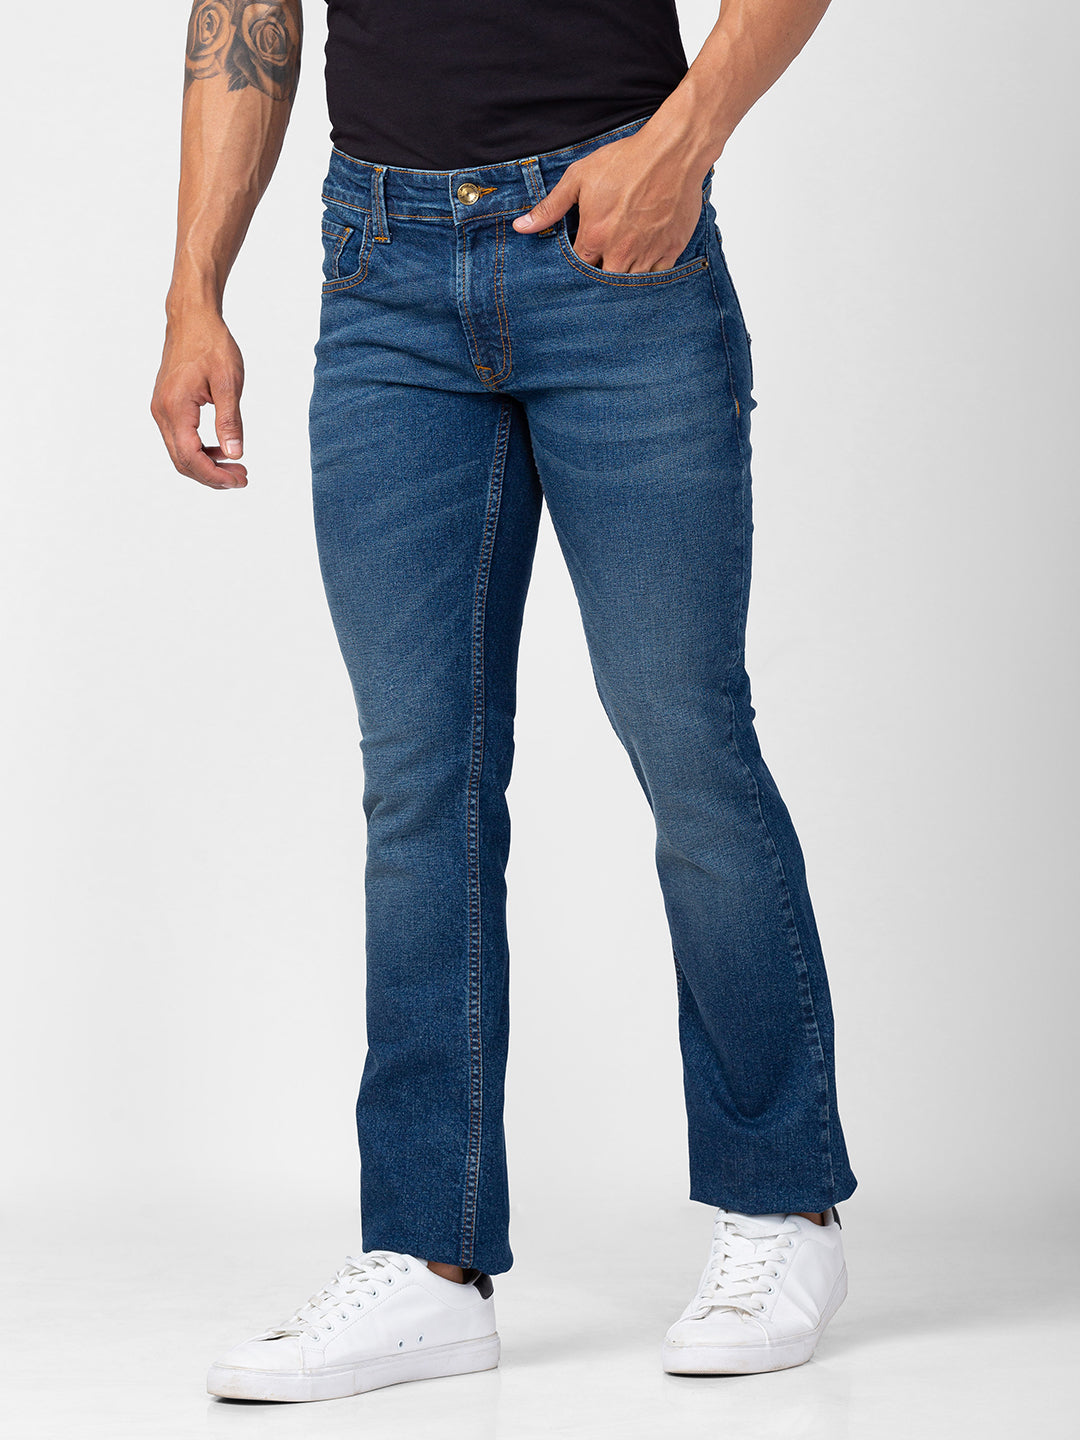 Spykar Men Vintage Blue Cotton Comfort Fit Regular Length Jeans (Rafter)